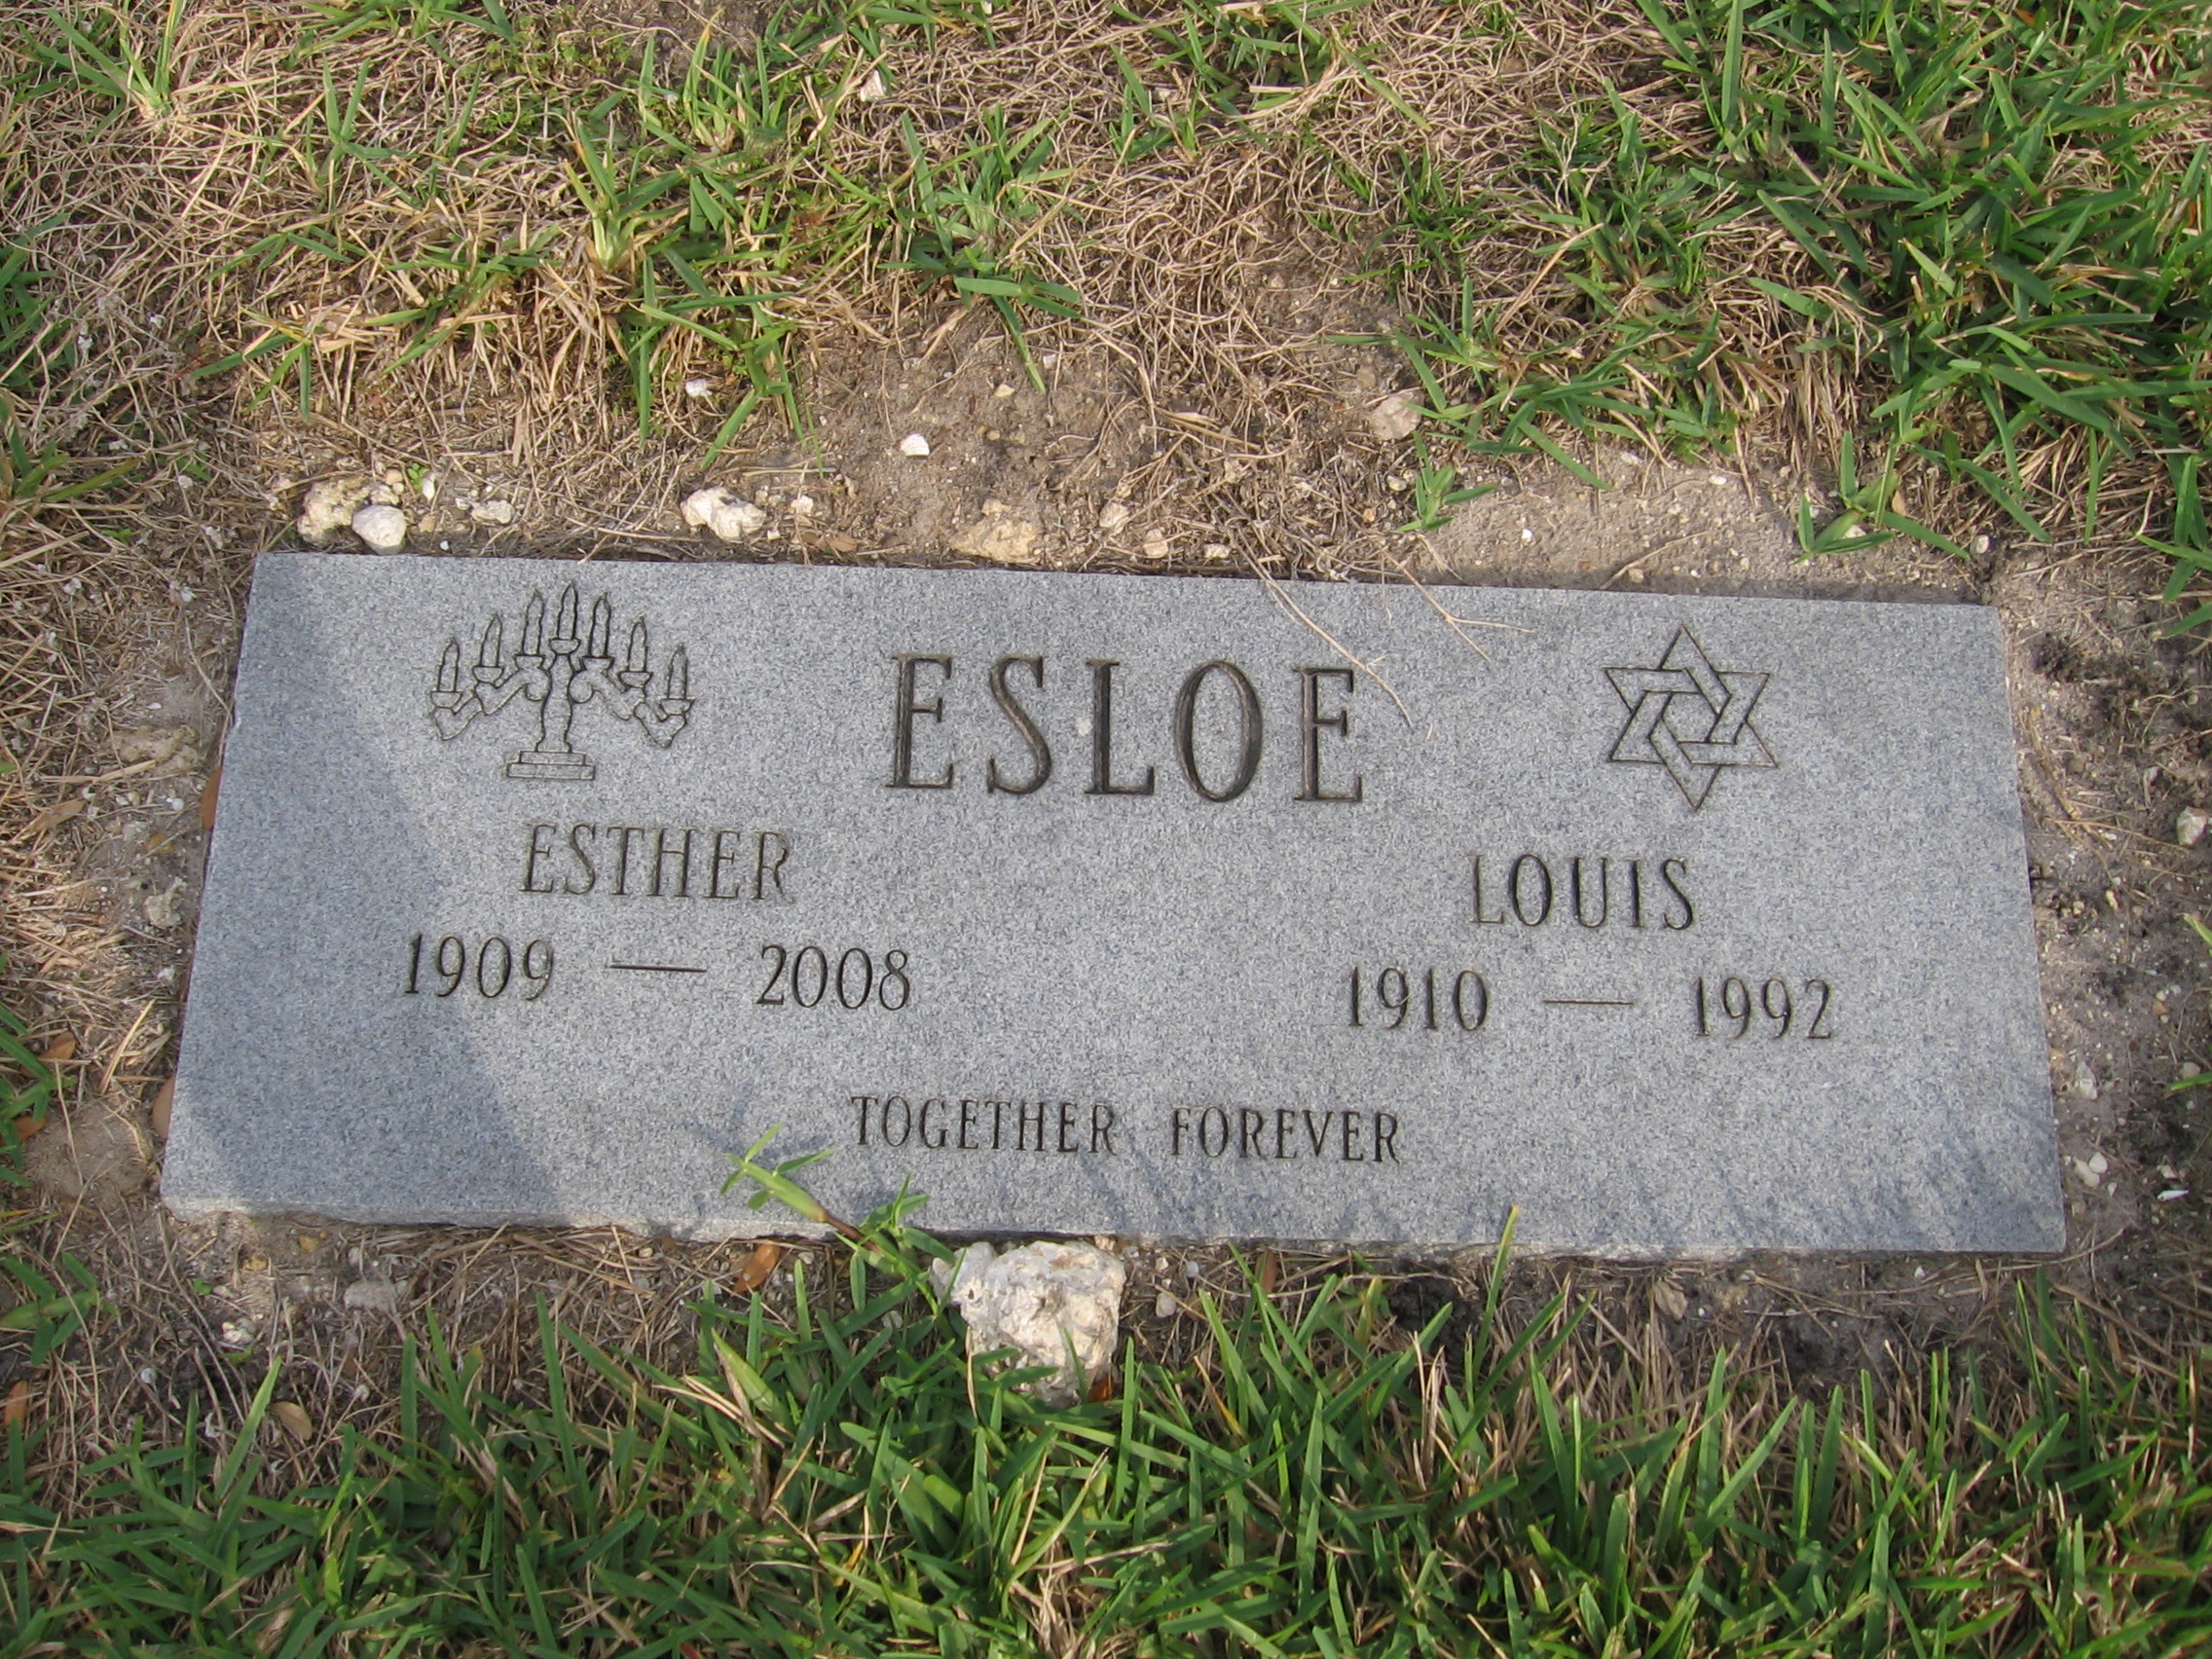 Louis Esloe